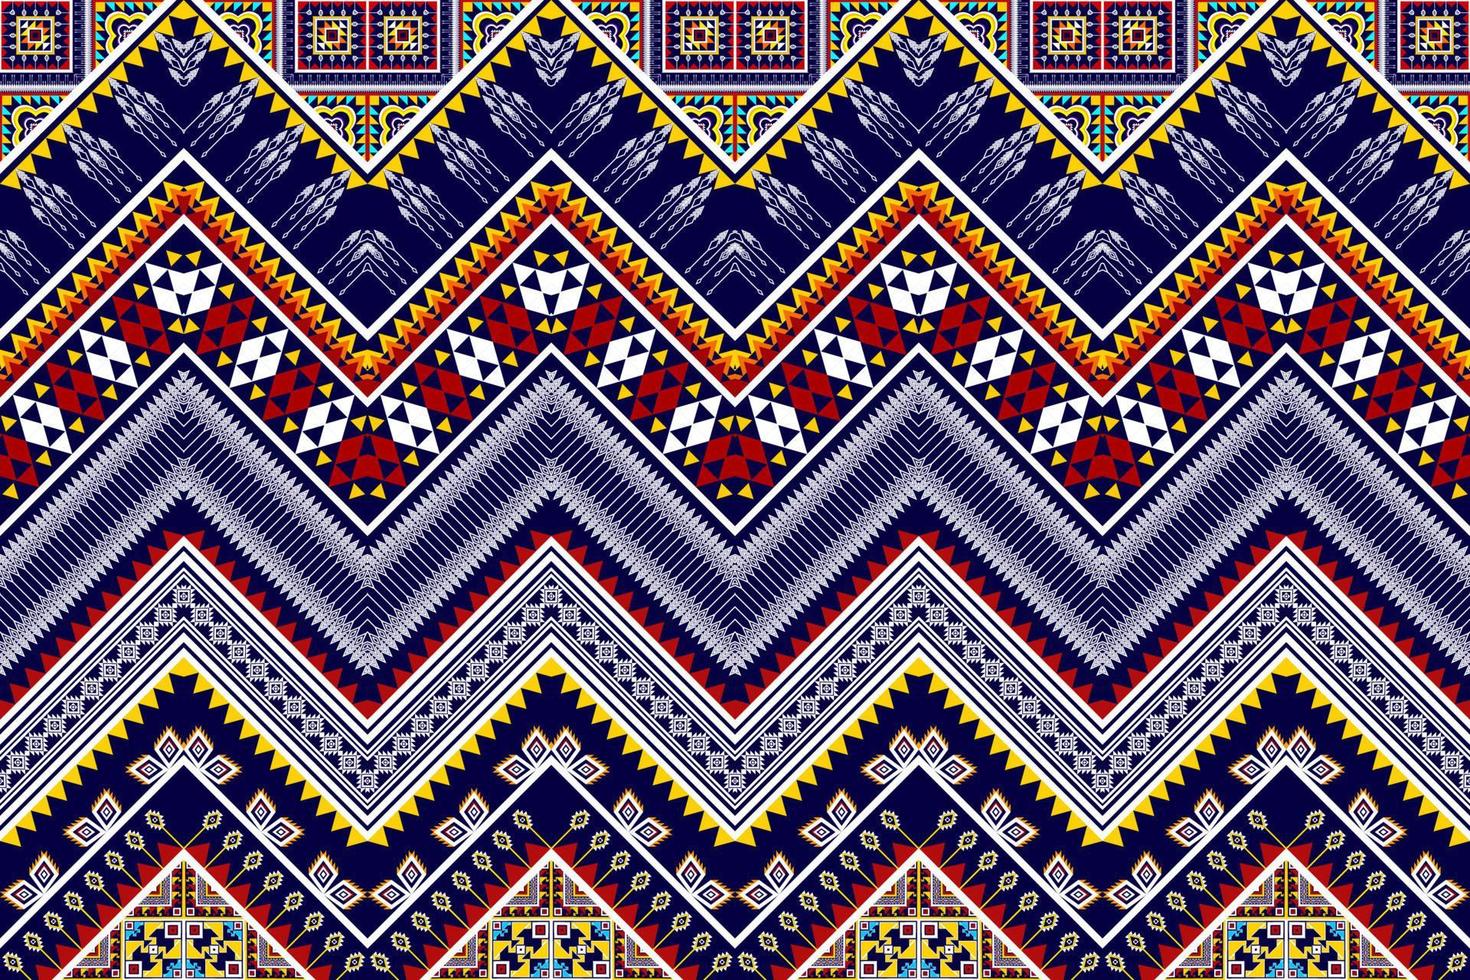 ikat ethnisches nahtloses musterdesign abstrakte geometrische aztekische stoffteppichverzierung chevron textildekoration tapete. Tribal Truthahn afrikanisch indianisch amerikanisch traditioneller Stickereivektor vektor